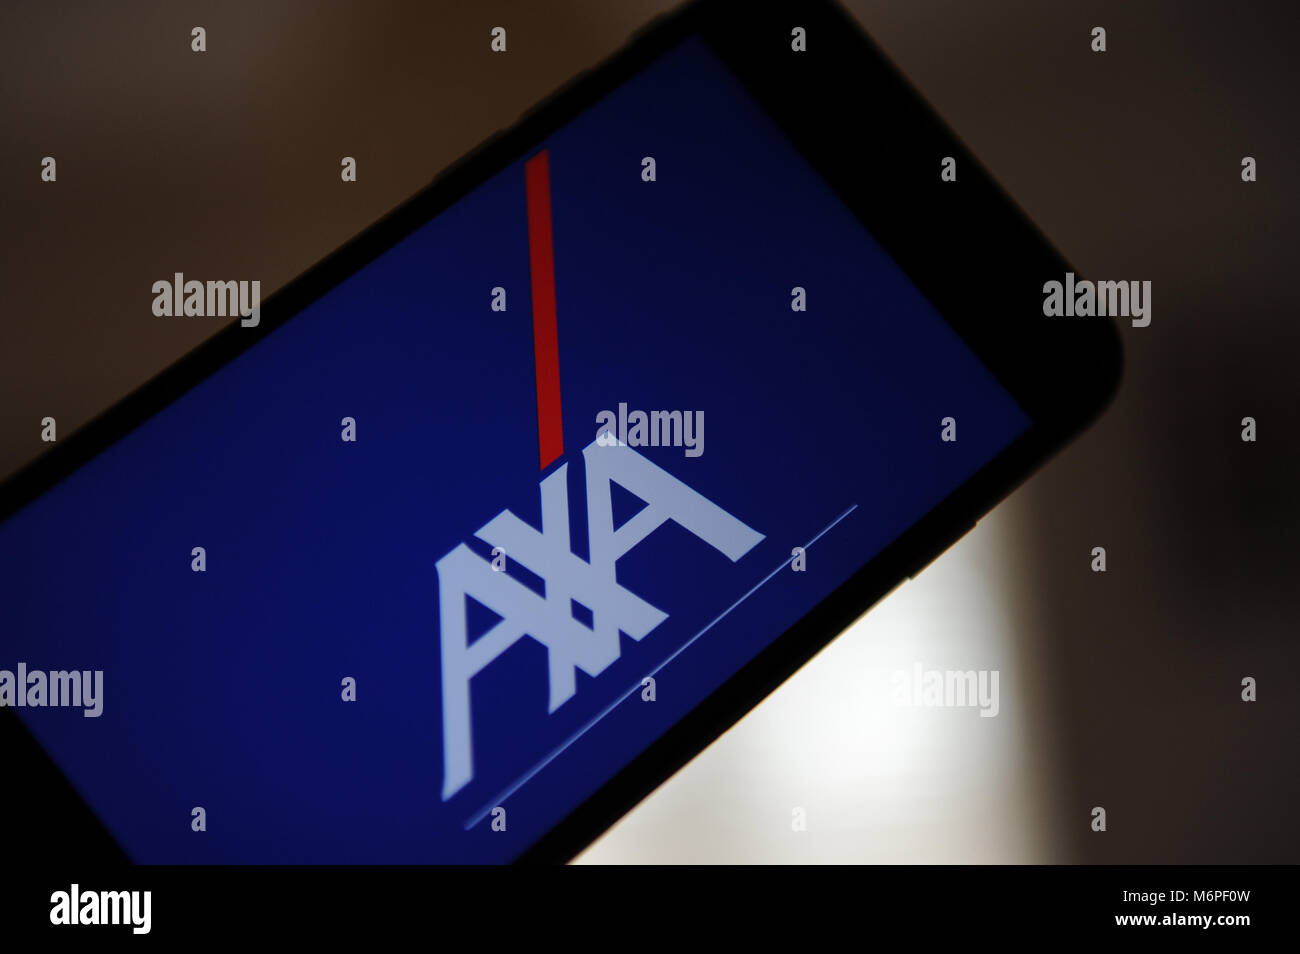 Axa logo immagini e fotografie stock ad alta risoluzione - Alamy